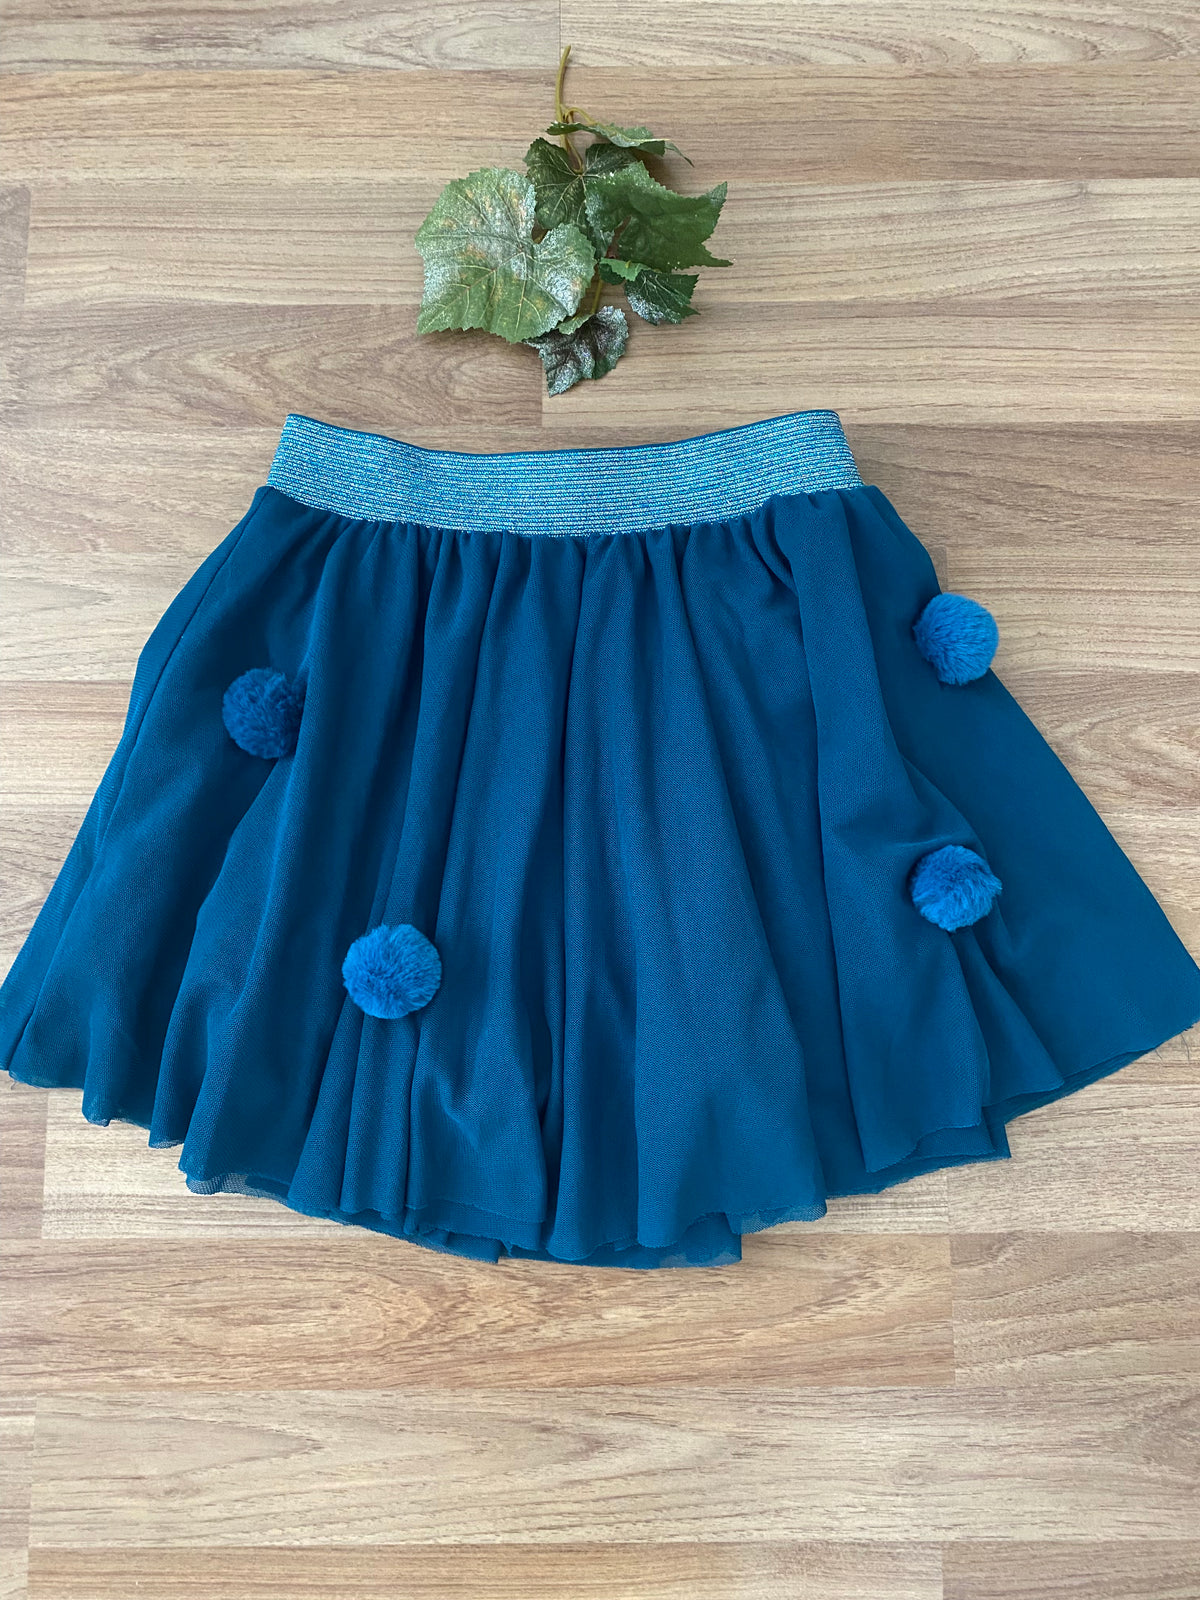 Skirt (Girls Size 9-10)